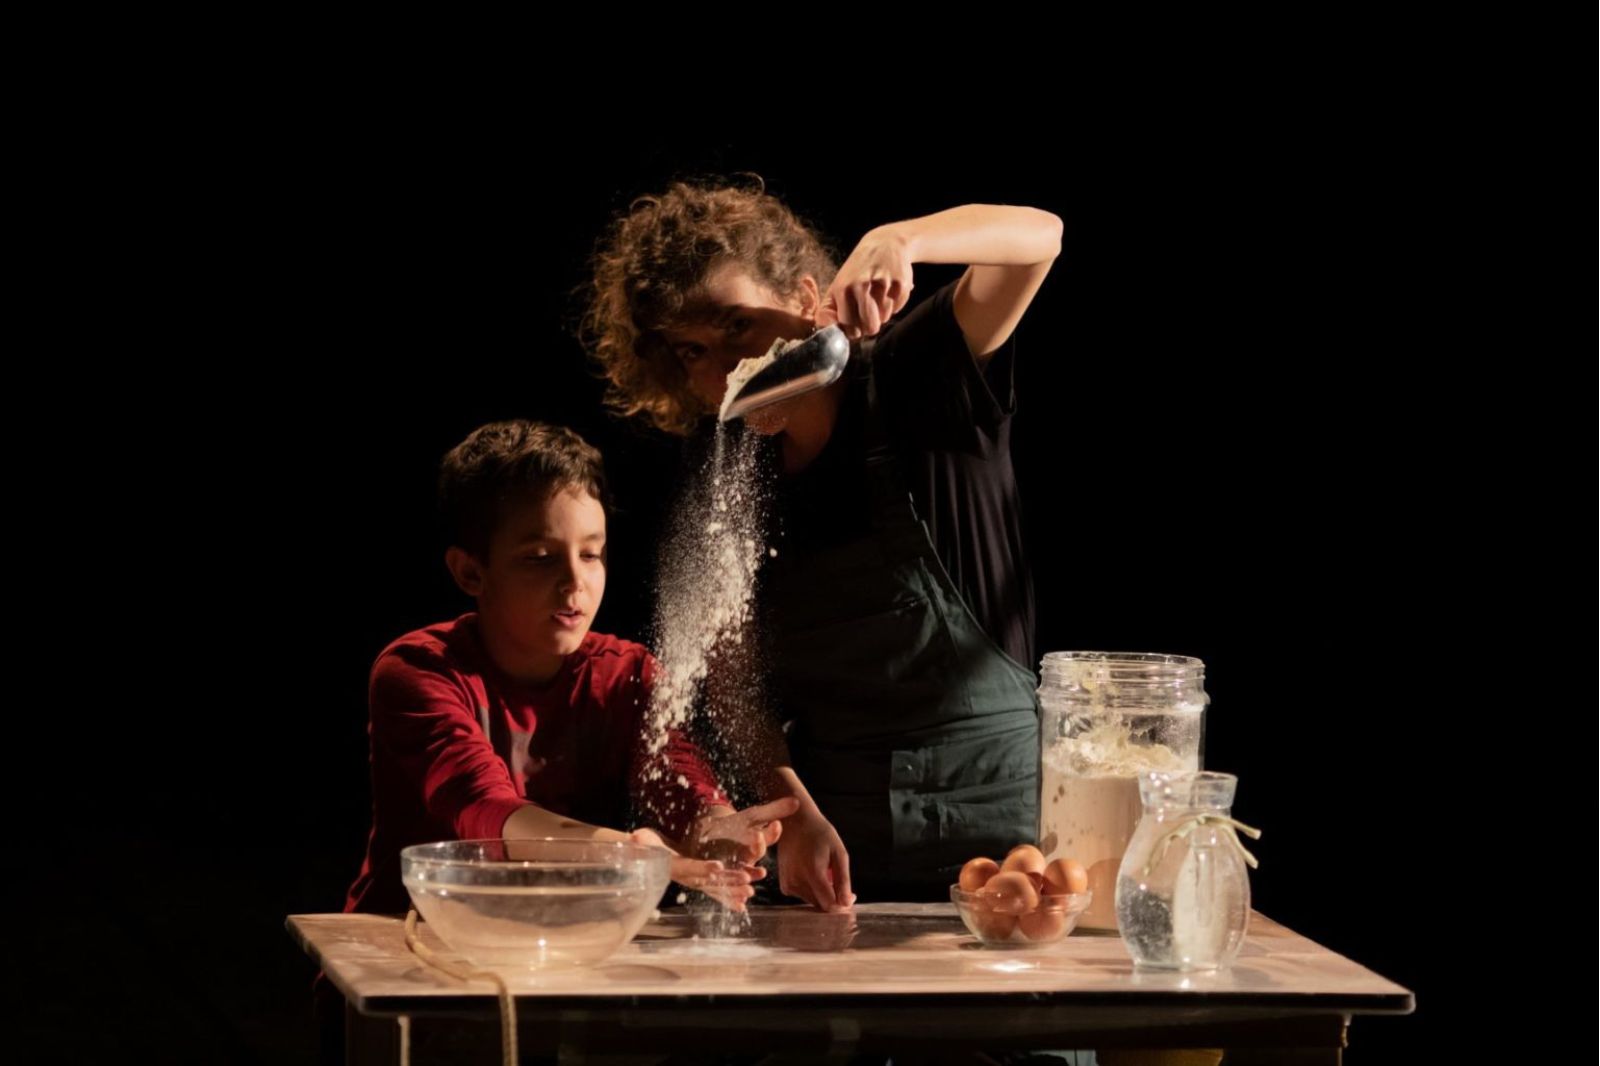 In foto, una donna e un bambino intenti a cucinare. Sul tavolo farina, uova, acqua